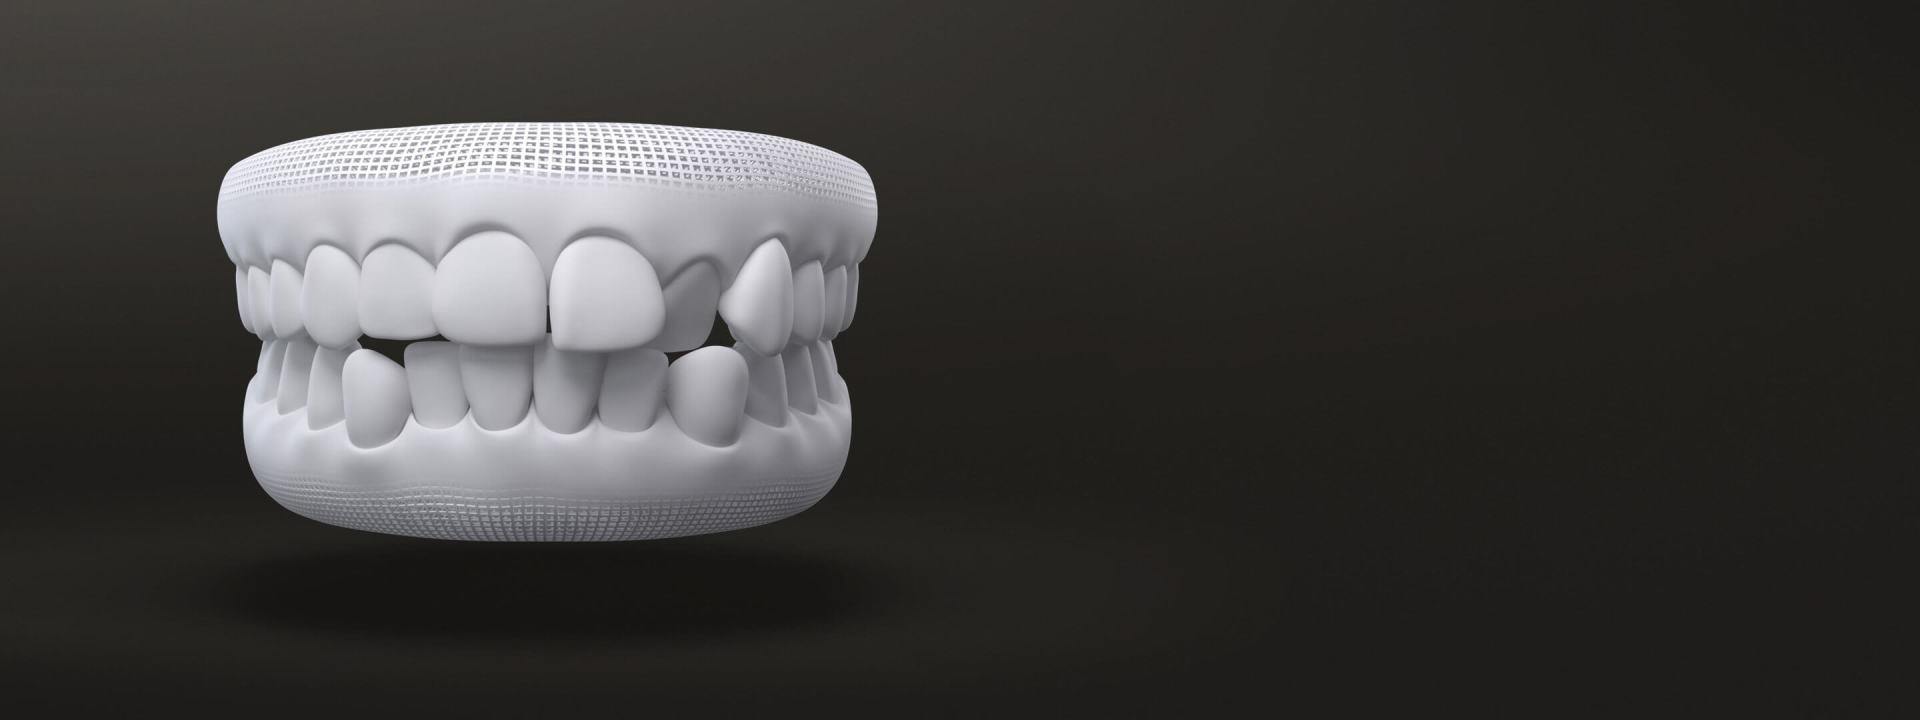 Denti disallineati modello 3D: casi trattabili con allineatori dentali Invisalign - Italia